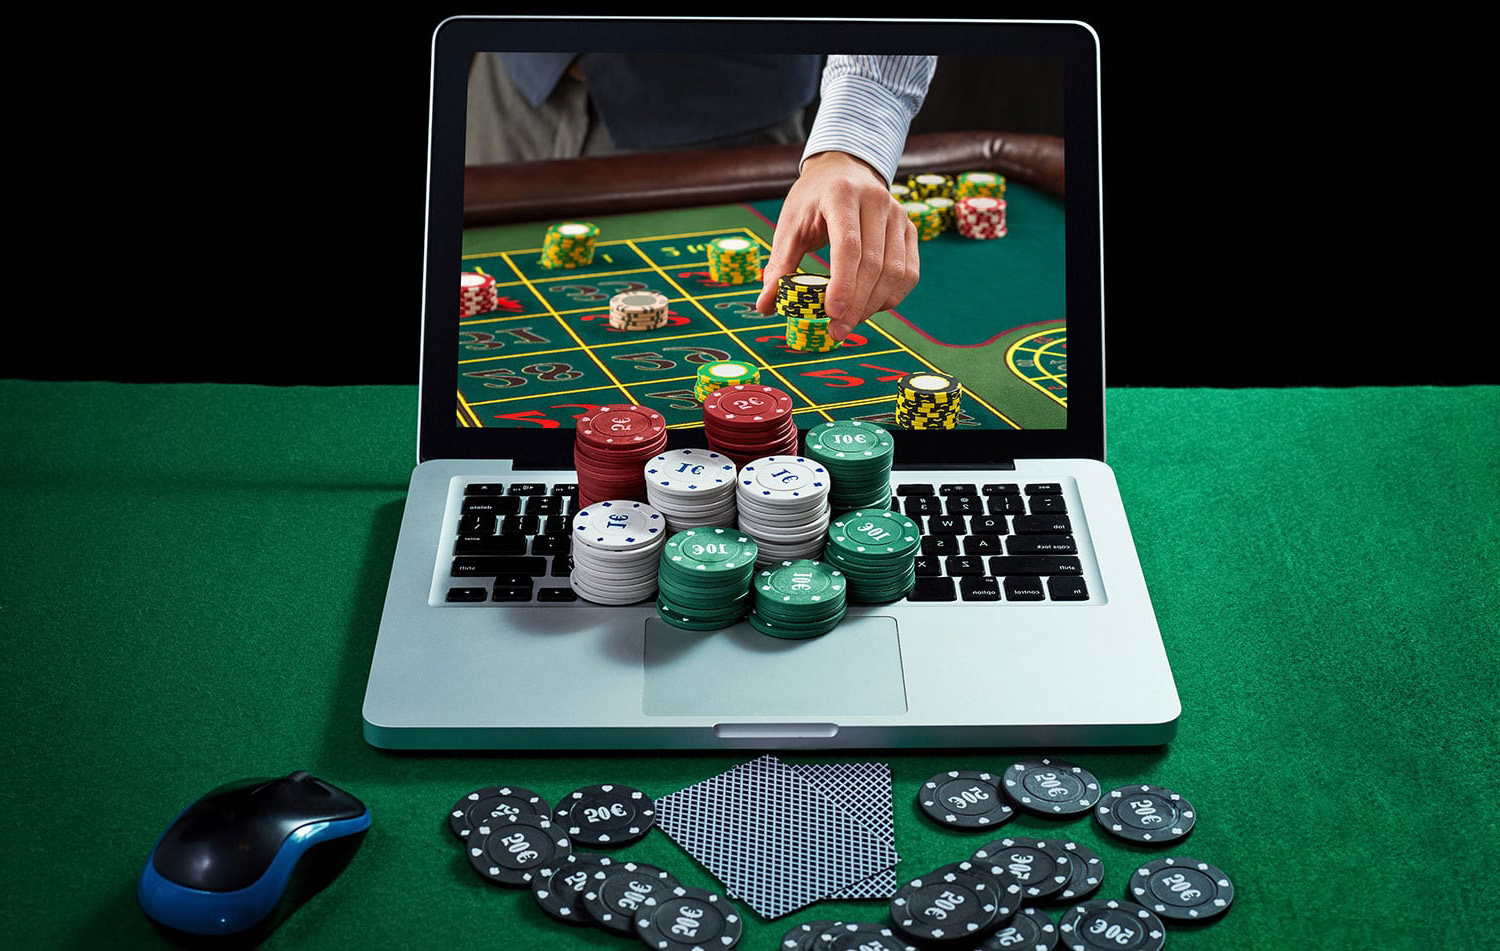 Онлайн азартные игры в казино скачать игровые автоматы на реальные деньги с выводом средств на карту сбербанка